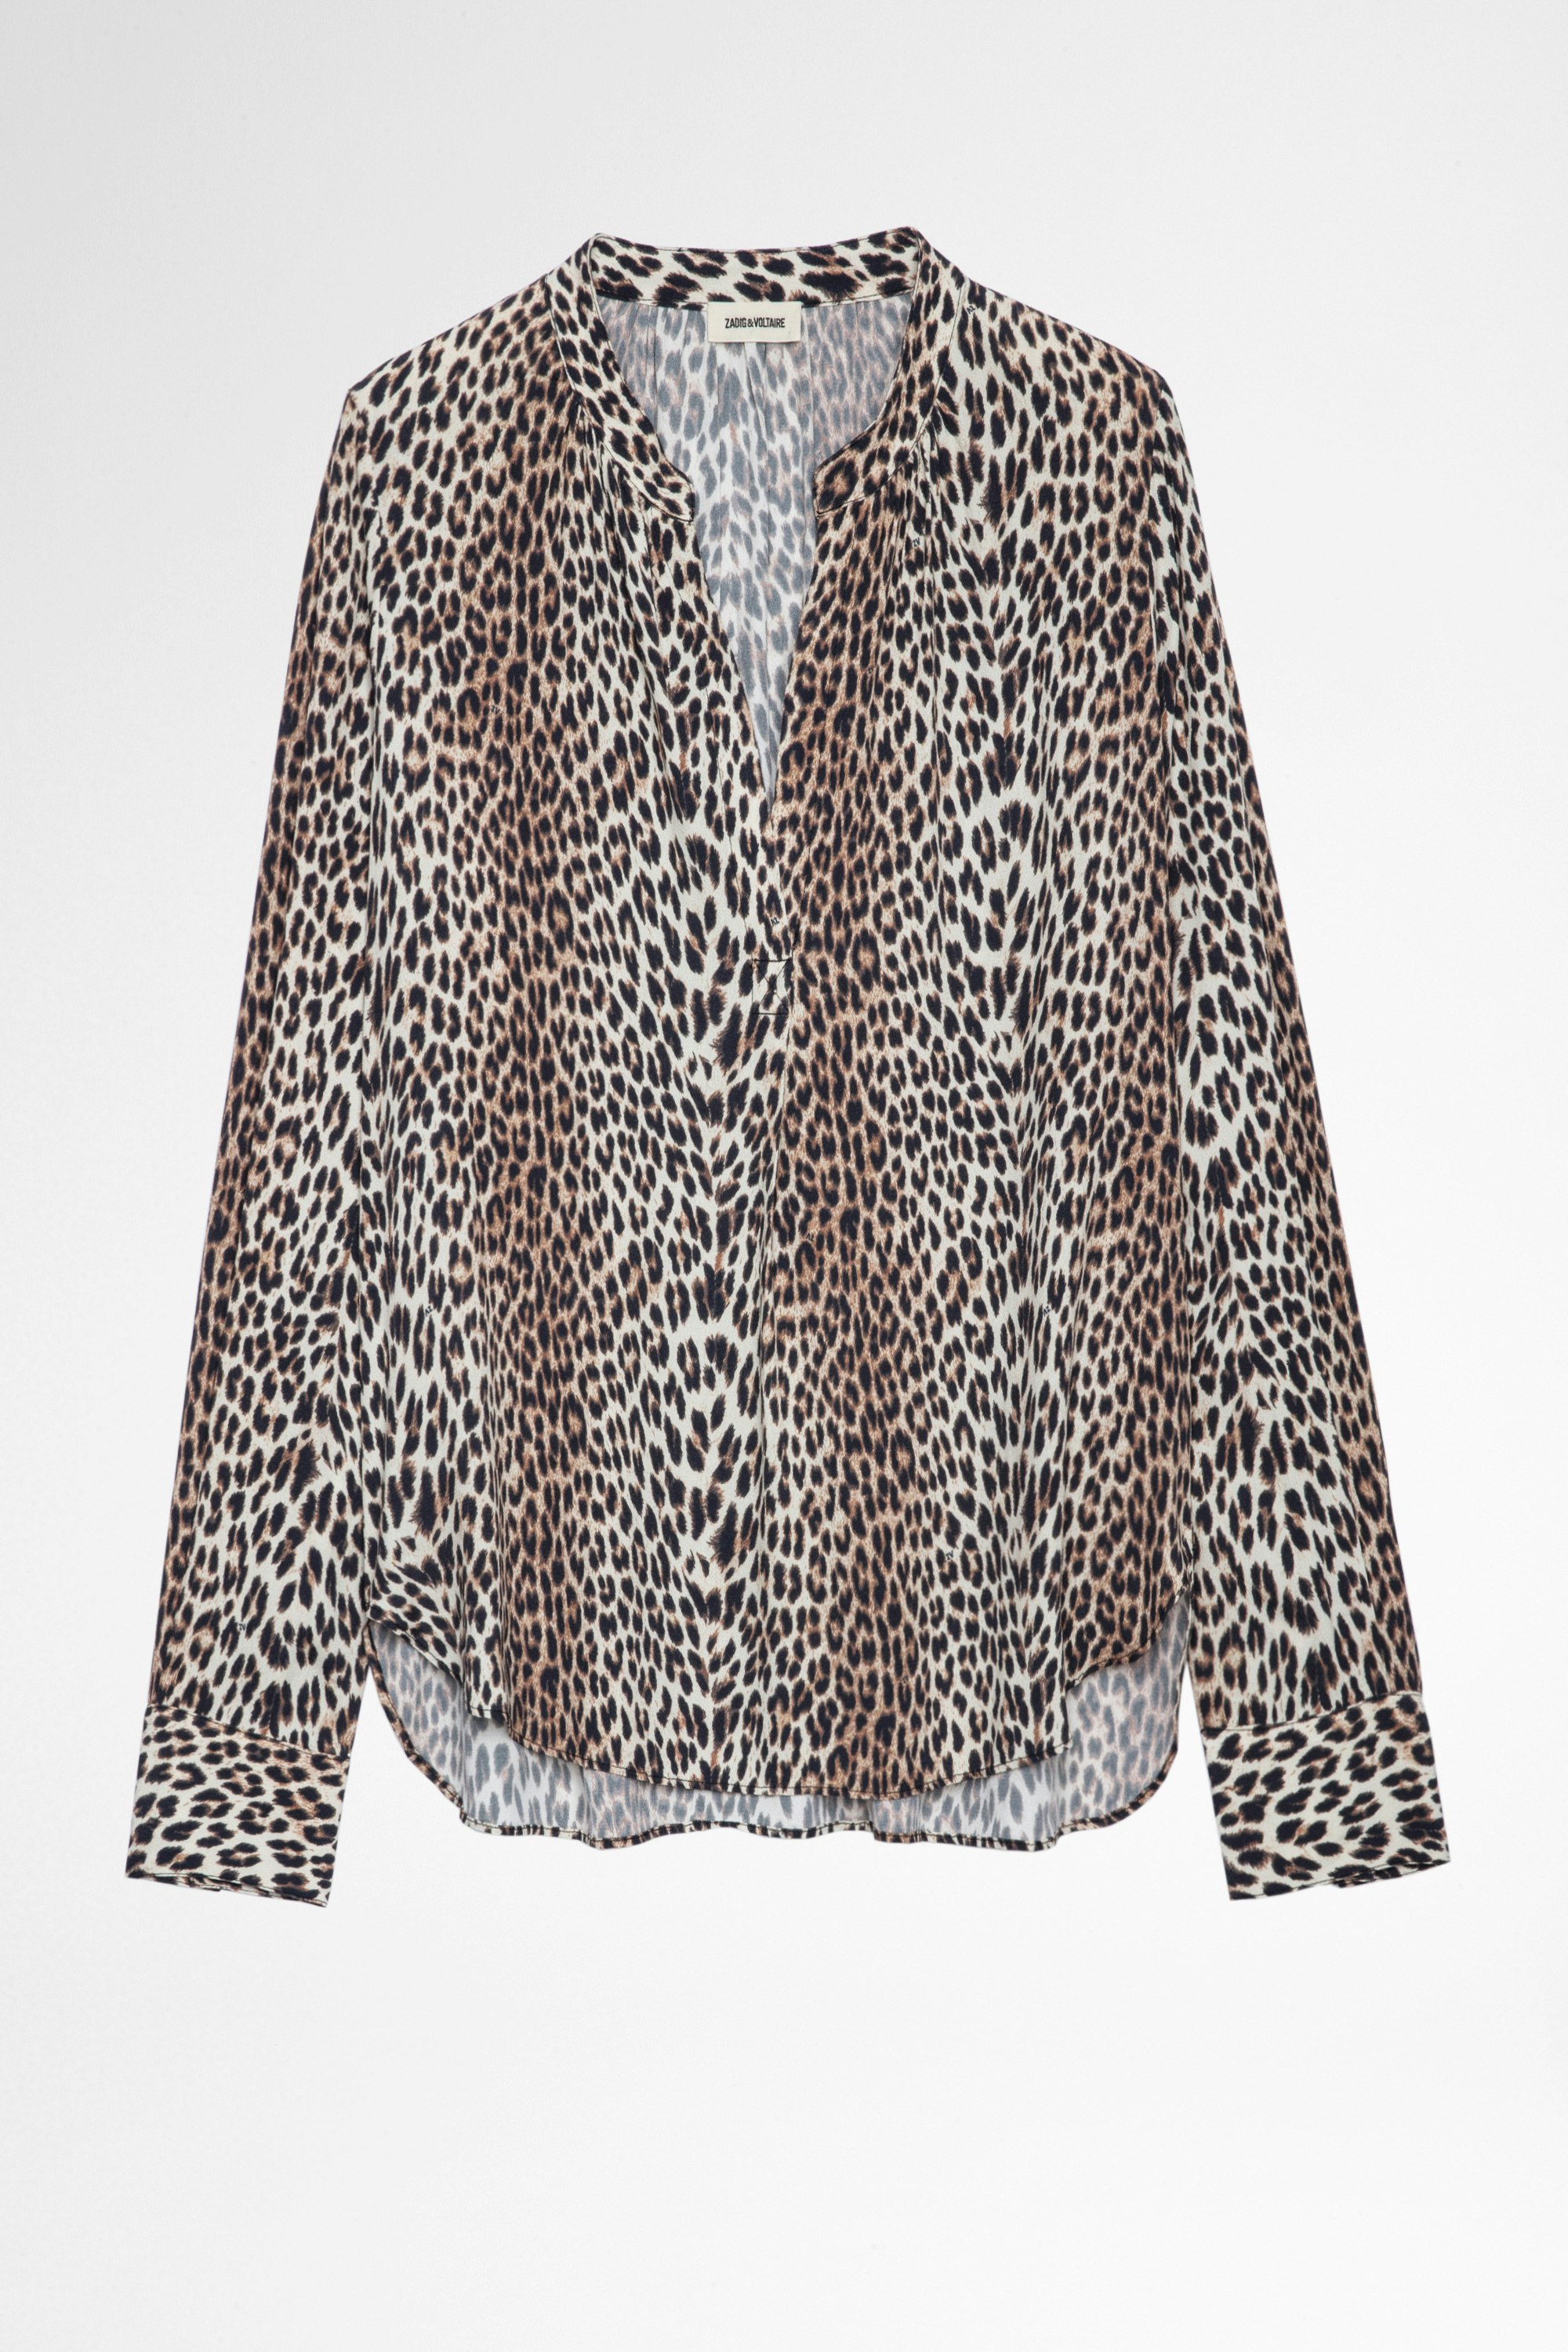 Tink Leopard Blouse Women’s leopard print blouse